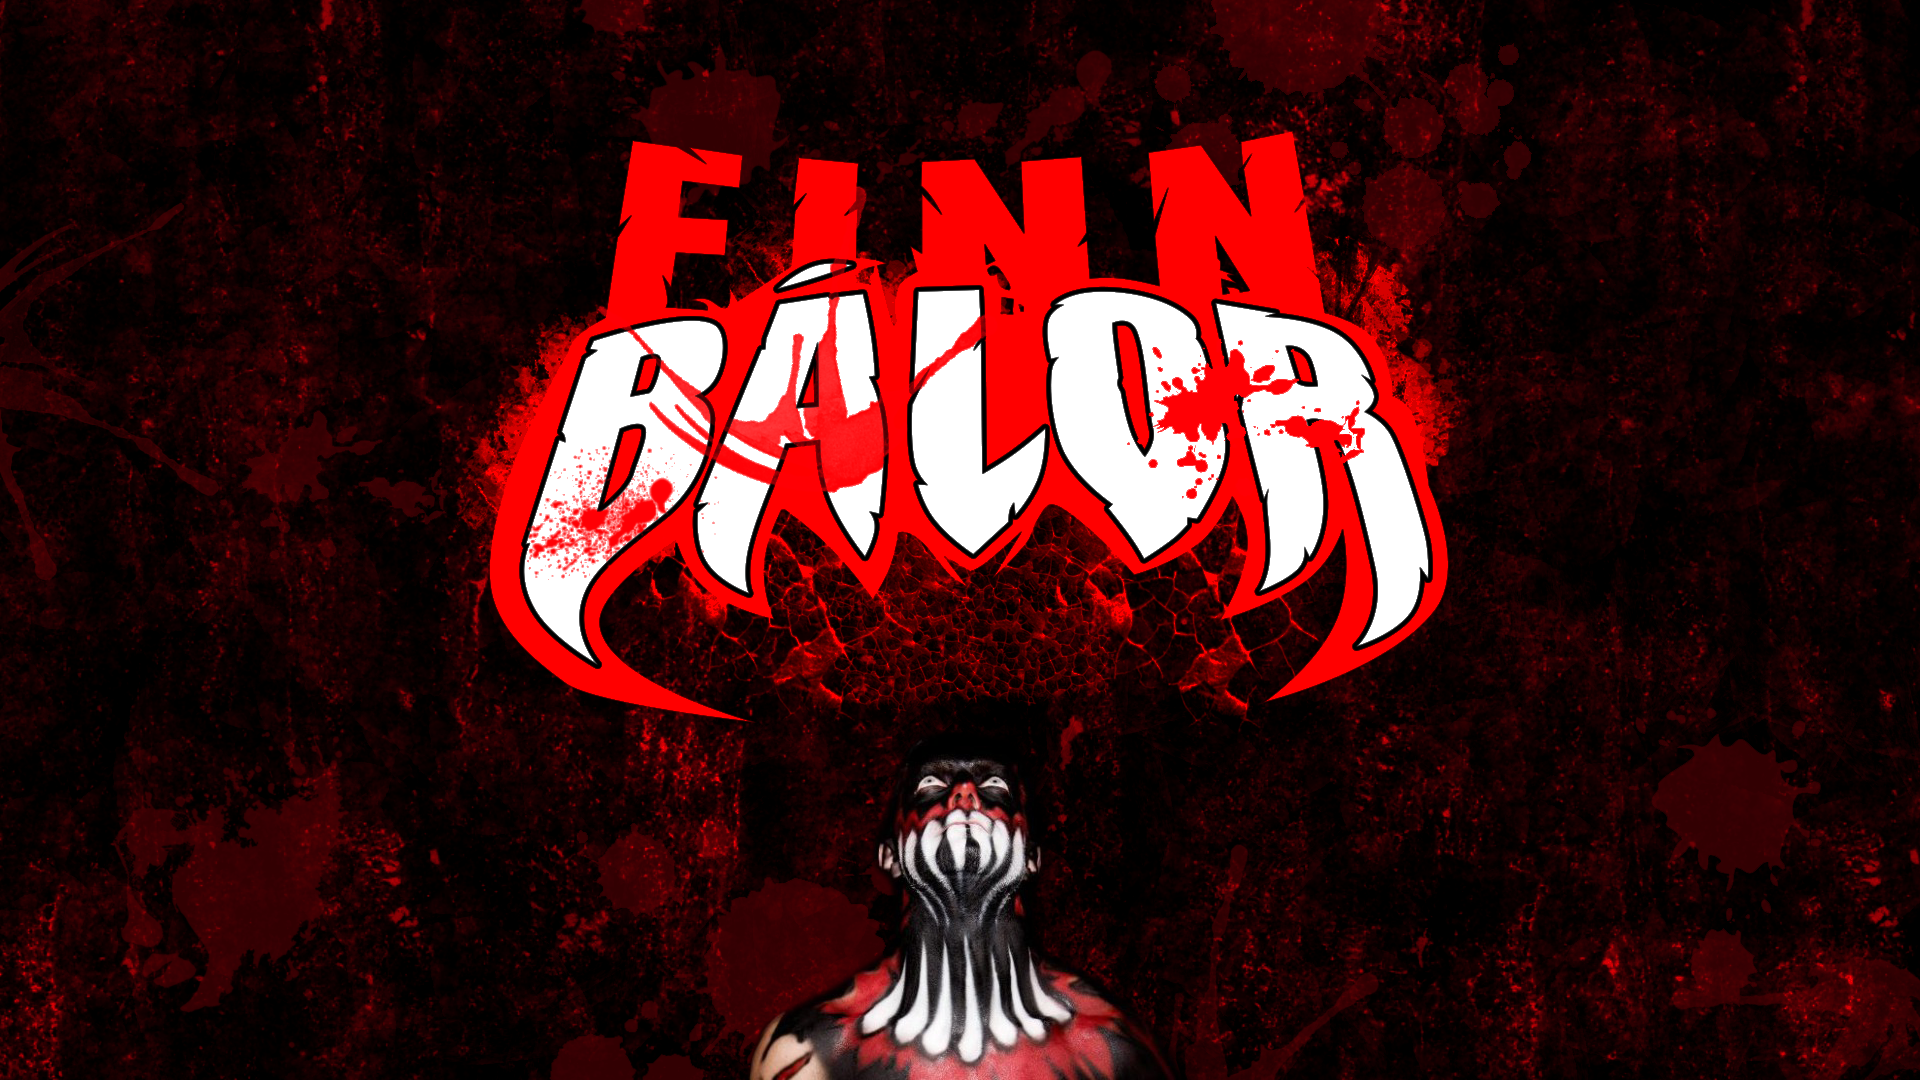 Finn Balor Wallpaper Pc - HD Wallpaper 